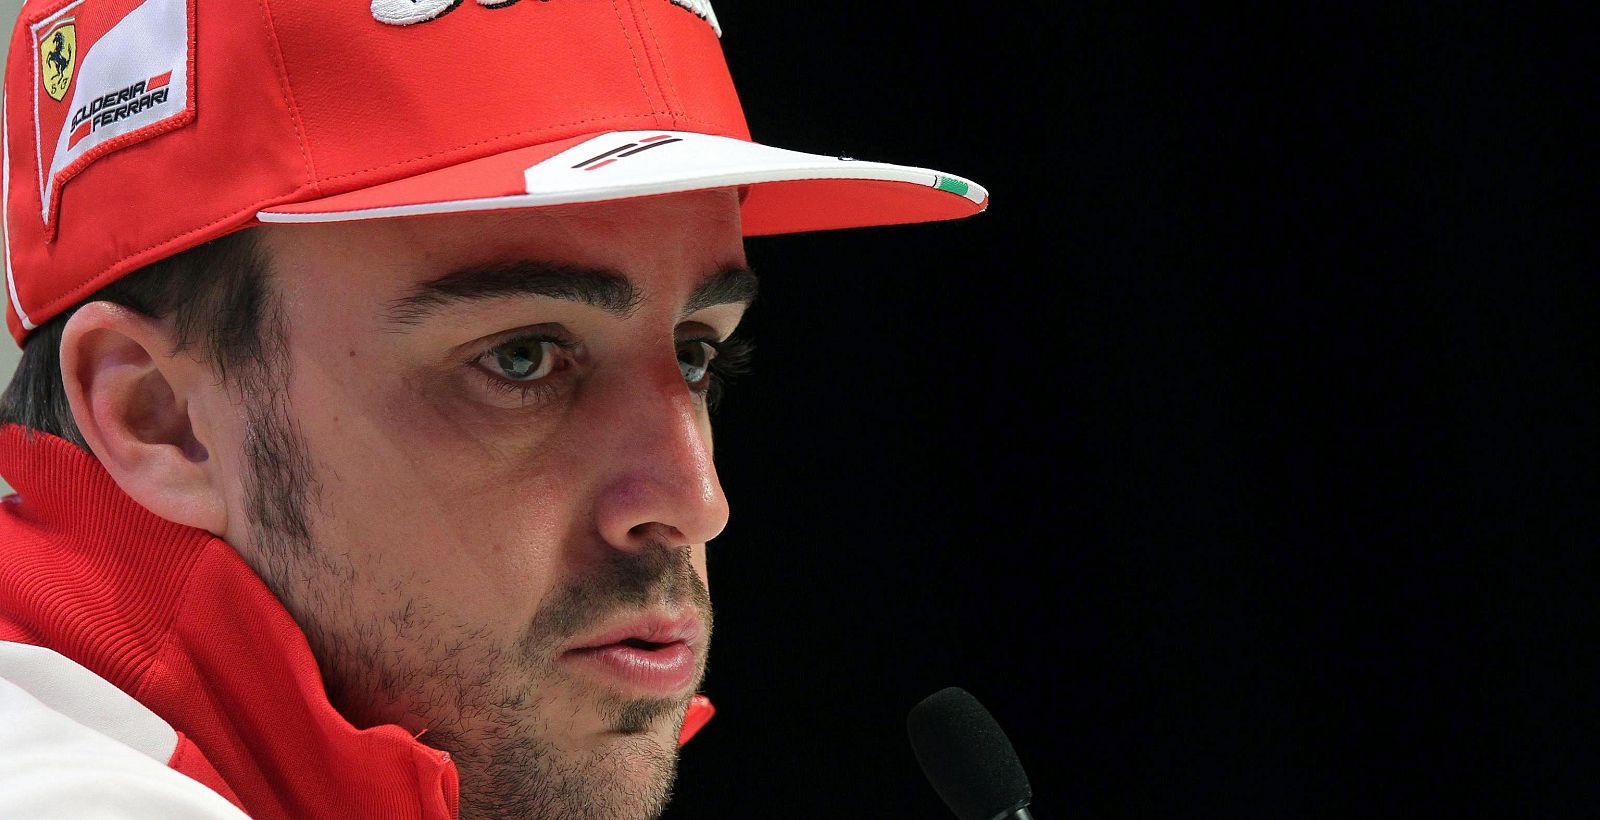 El piloto español de Fórmula 1 Fernando Alonso, de la escudería Ferrari